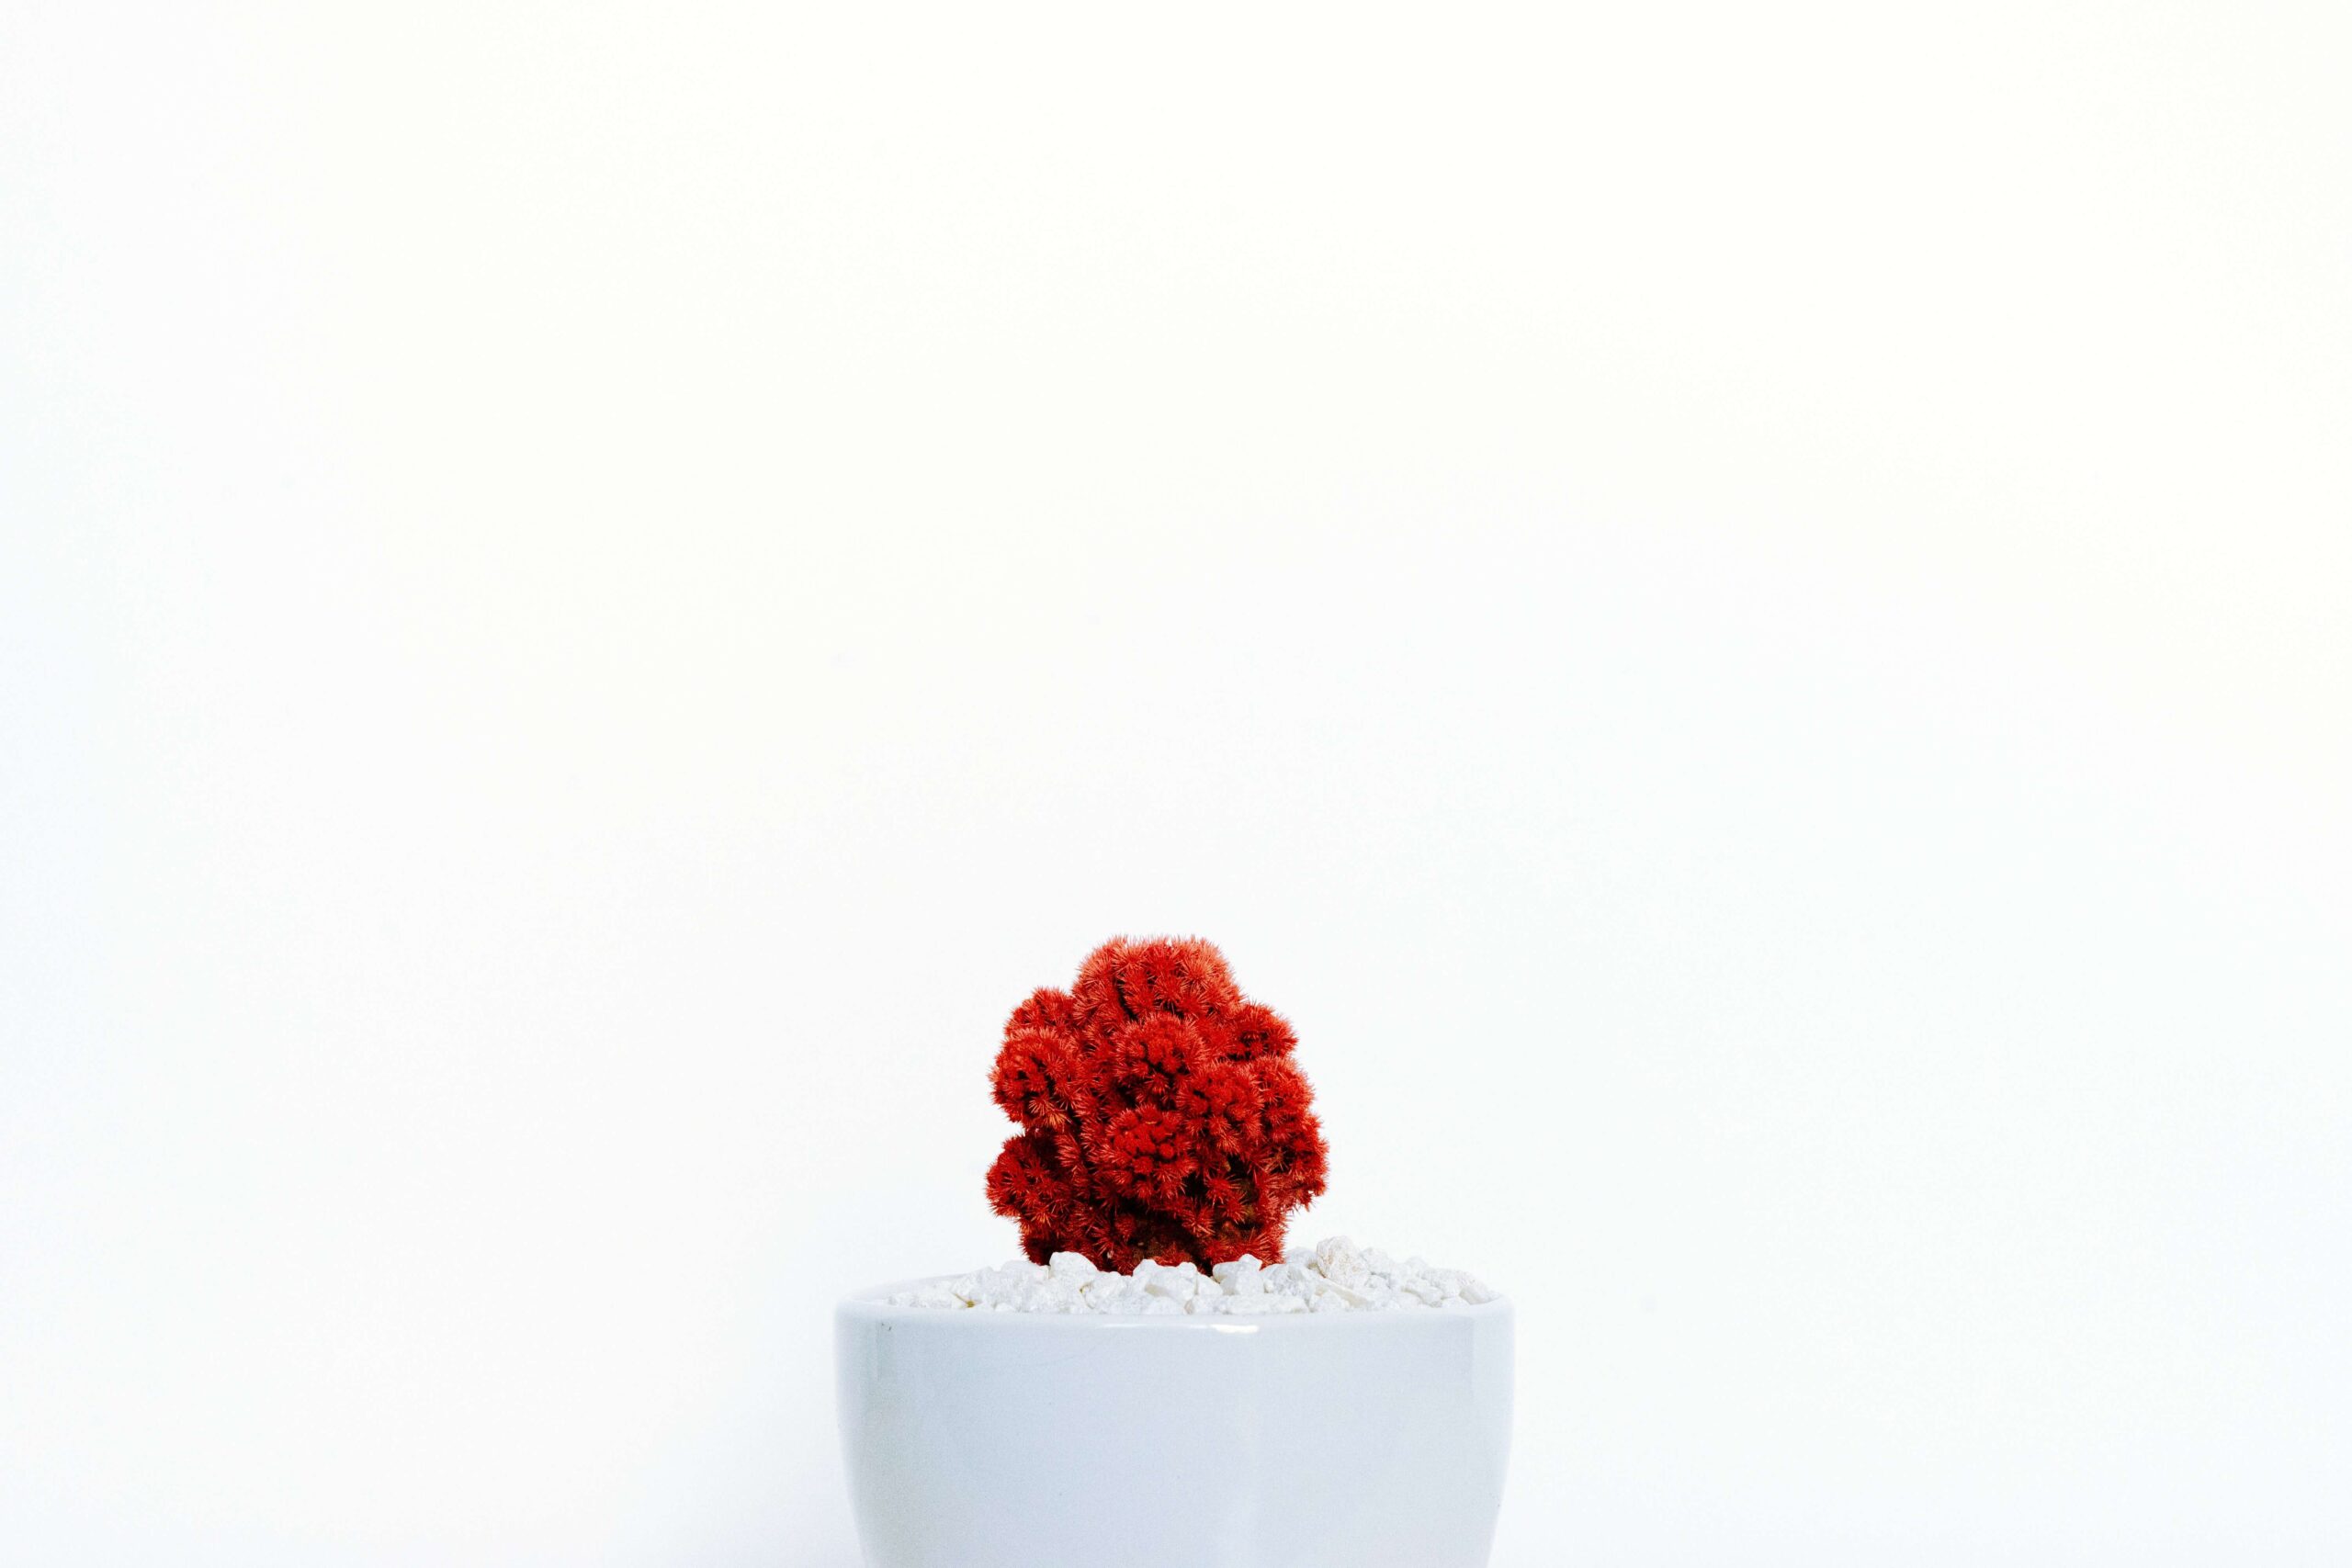 صورة فيها وردة حمراء مع خلفية بيضاء